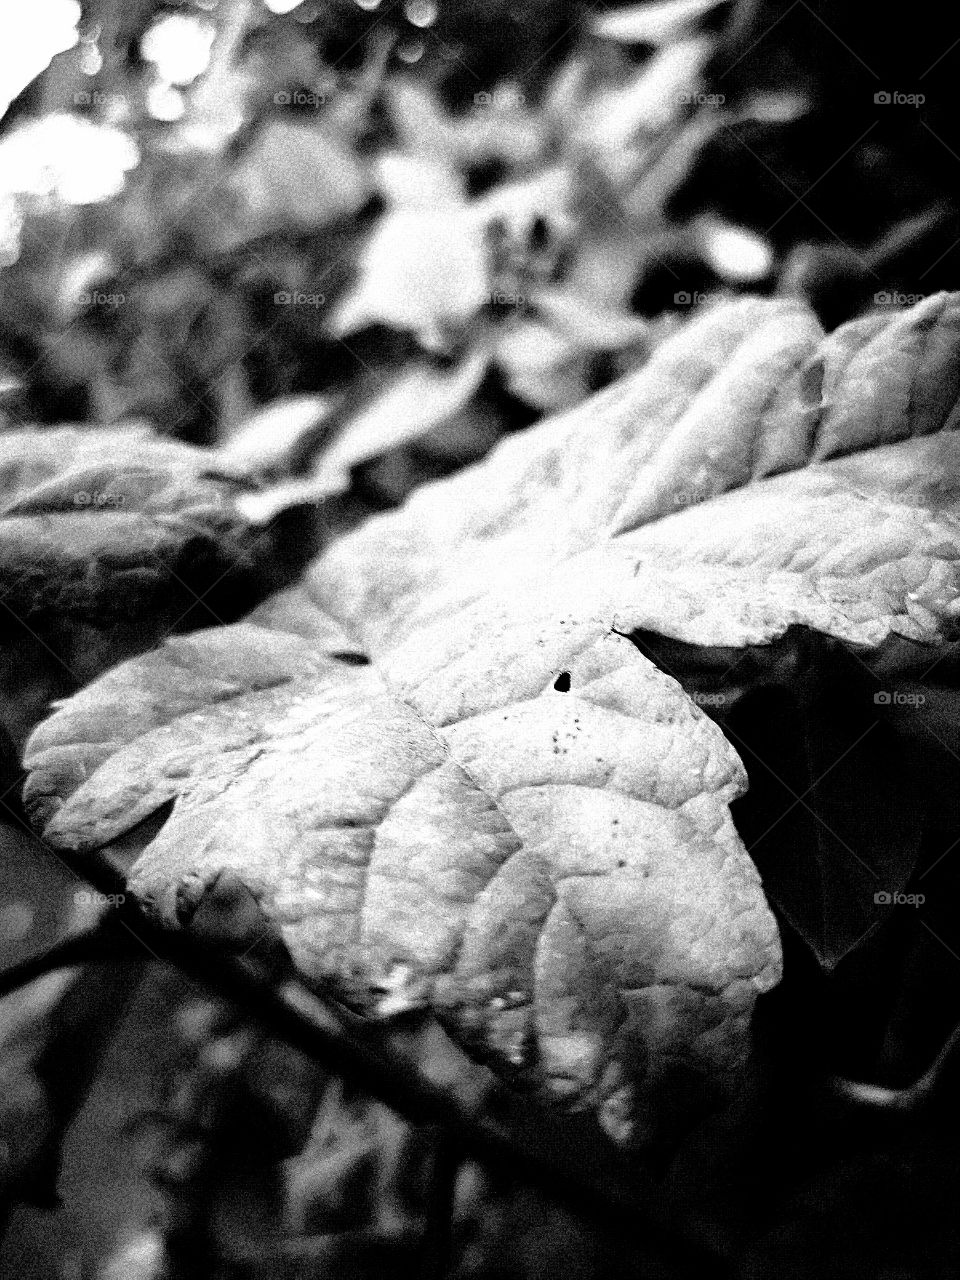 10-11-18 Black and white leaf